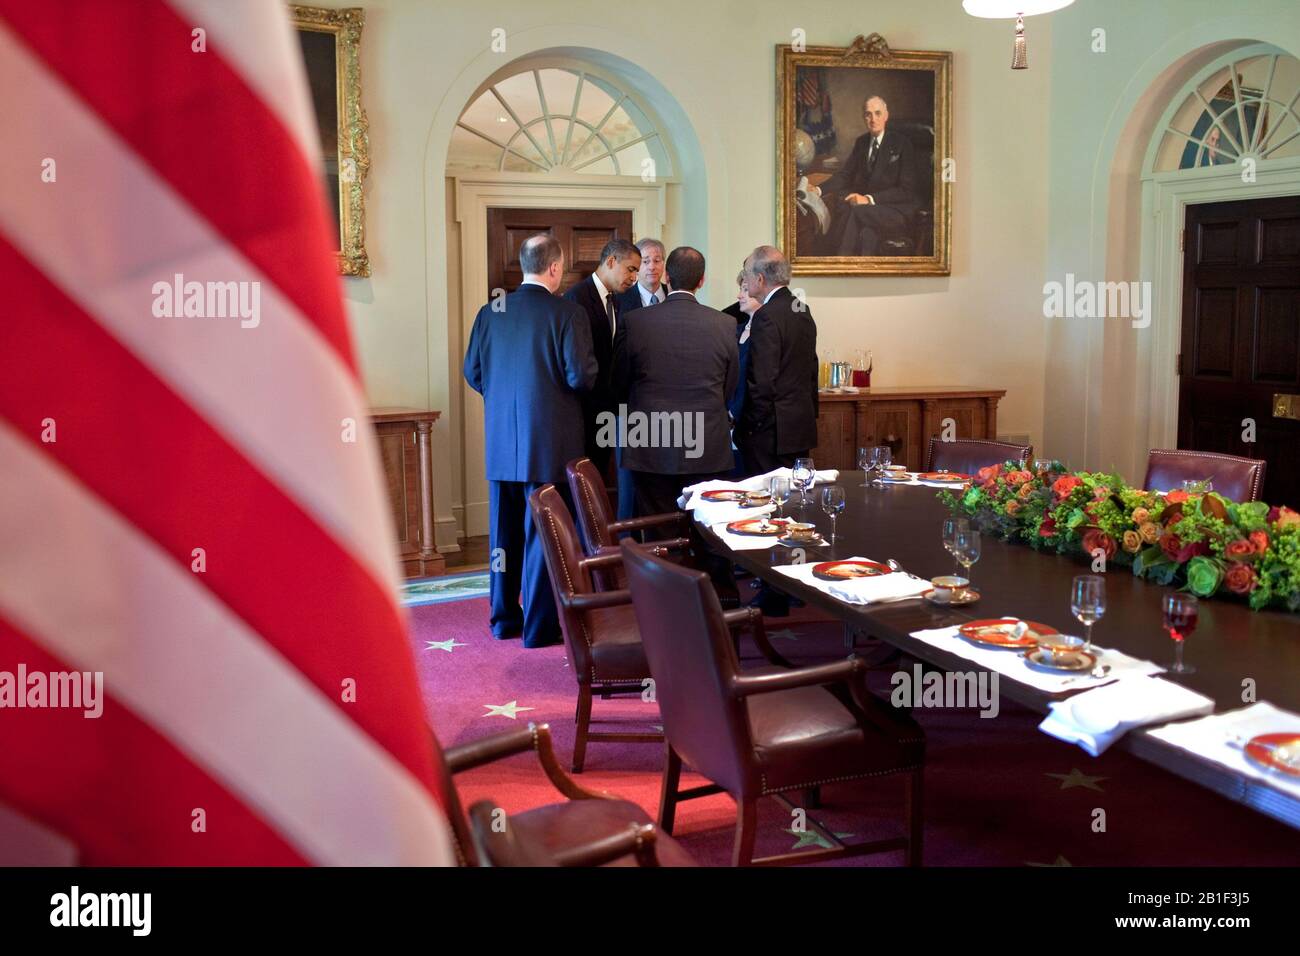 Washington, DC - 18. August 2009 -- US-Präsident Barack Obama gewährt Berater nach einem Arbeitsessen mit Präsident Hosni Mubarak aus Ägypten im Kabinettsraum des Weißen Hauses, 18. August 2009.Mandatory Credit: Pete Souza - Weiße Haus über CNP/MediaPunch Stockfoto